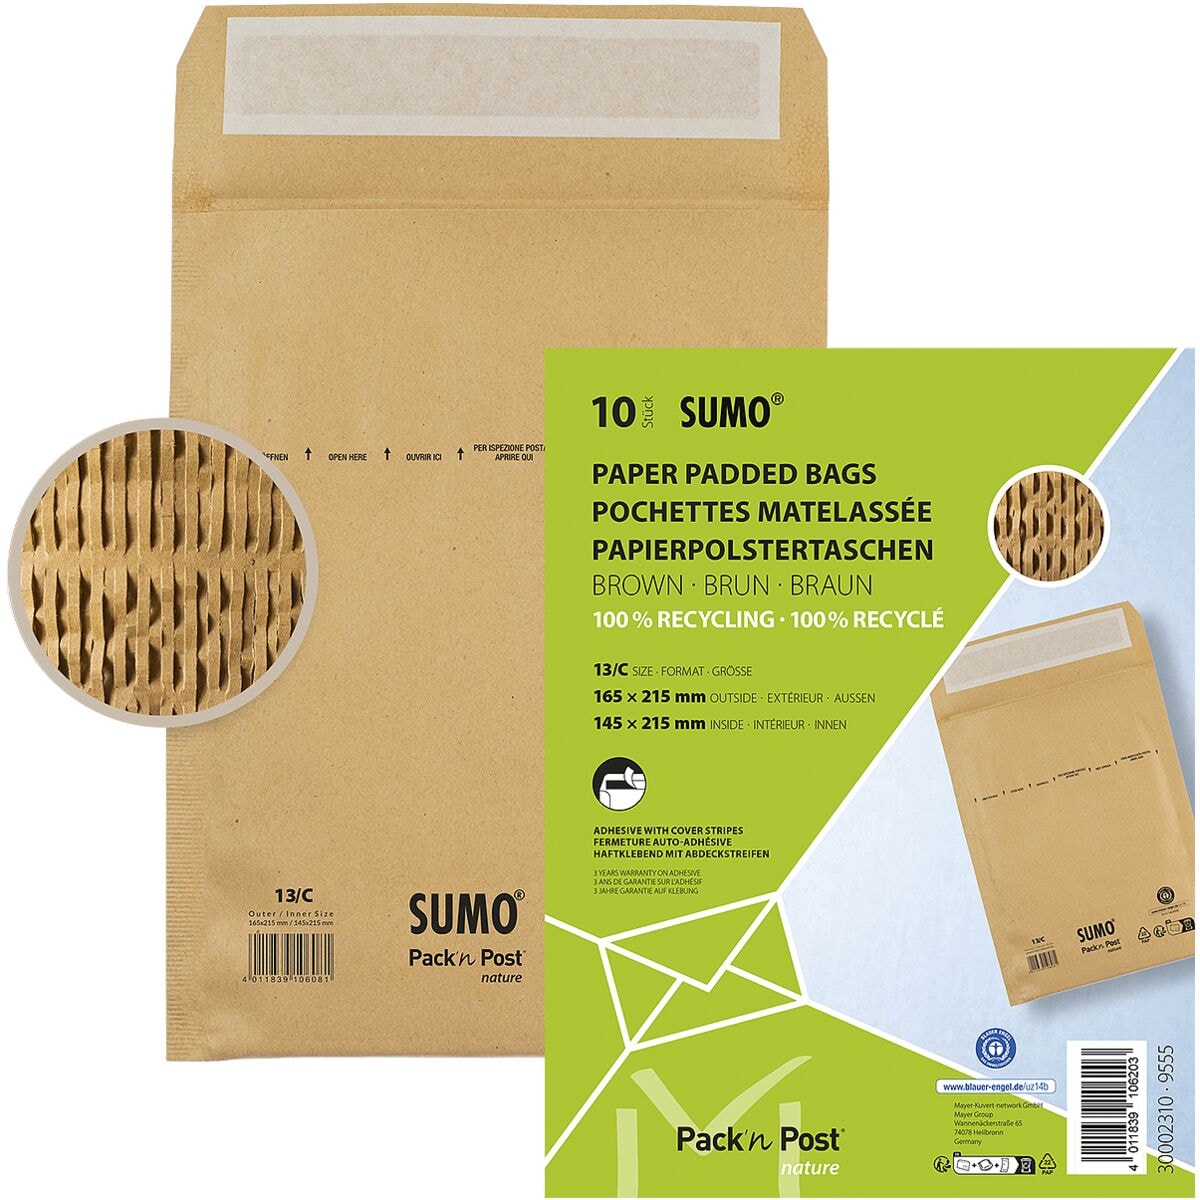 Mailmedia 10 Papierpolster-Versandtaschen SUMO® SU1513, 16,5x21,5 cm, im Kleinpack